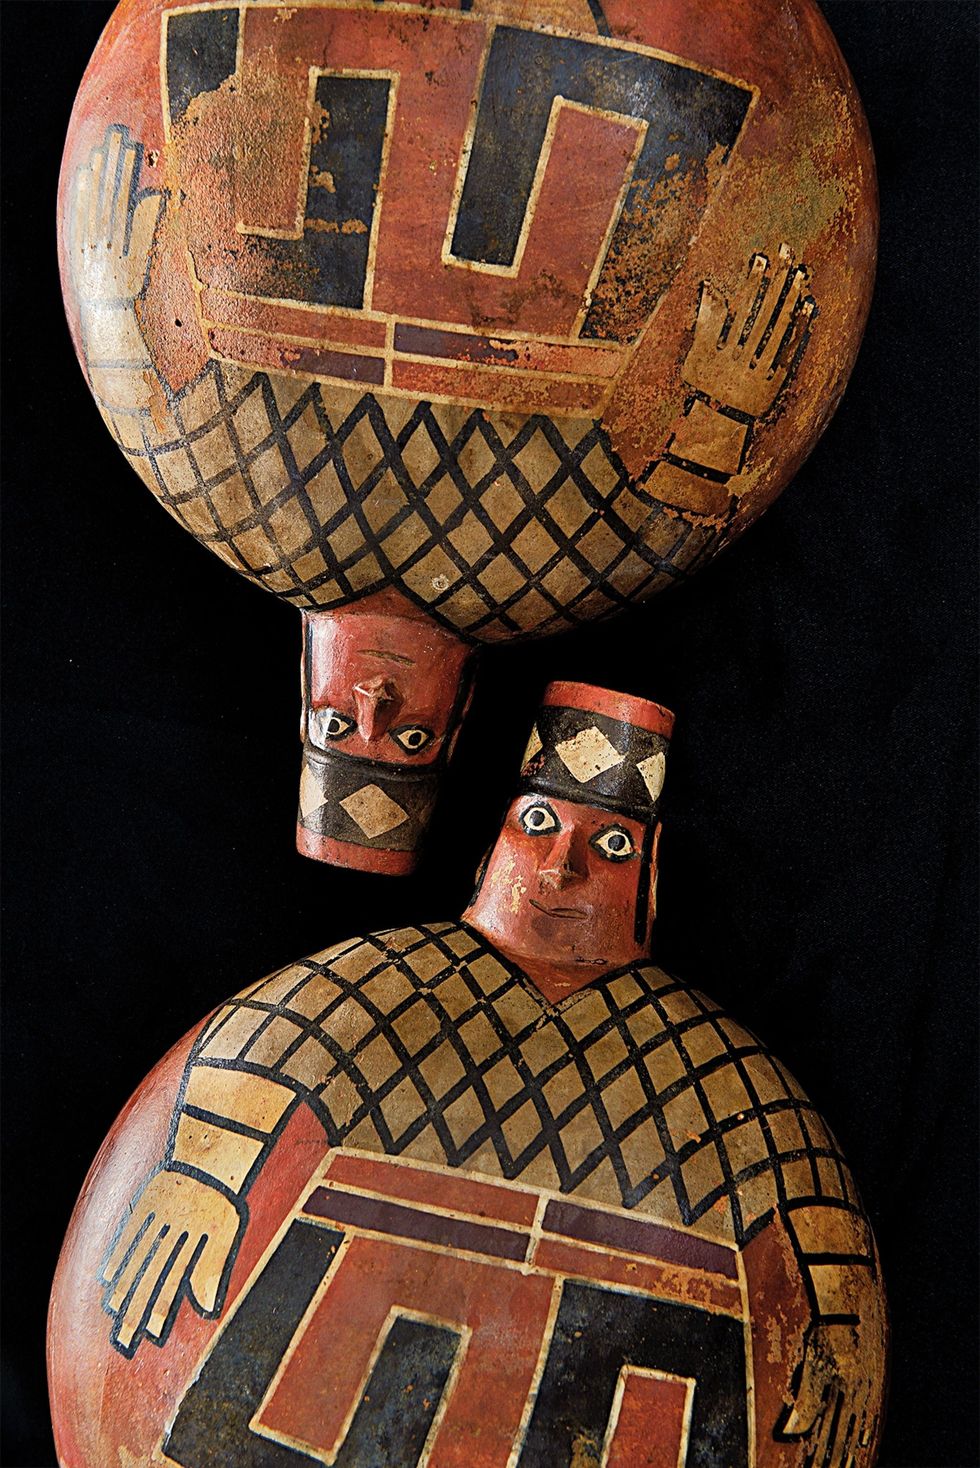 Met behulp van heldere geometrische vormen zijn Wariheersers op deze aardewerken kruiken uitgebeeld